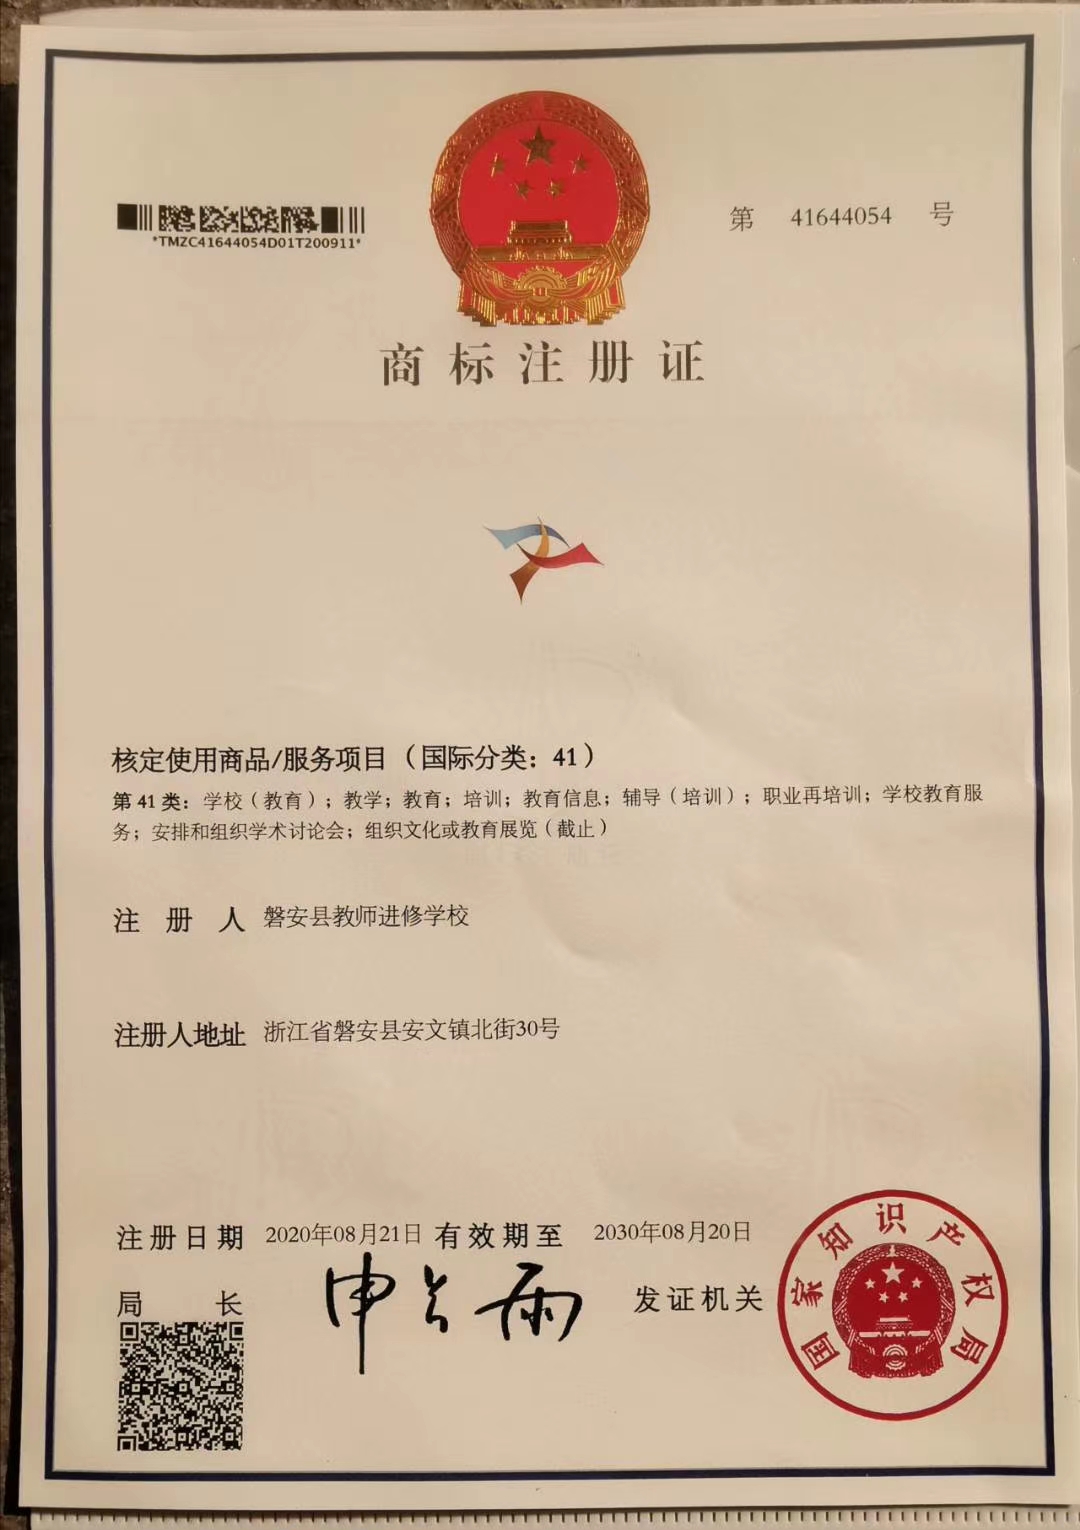 磐安县“表达教育”标志获商标注册证